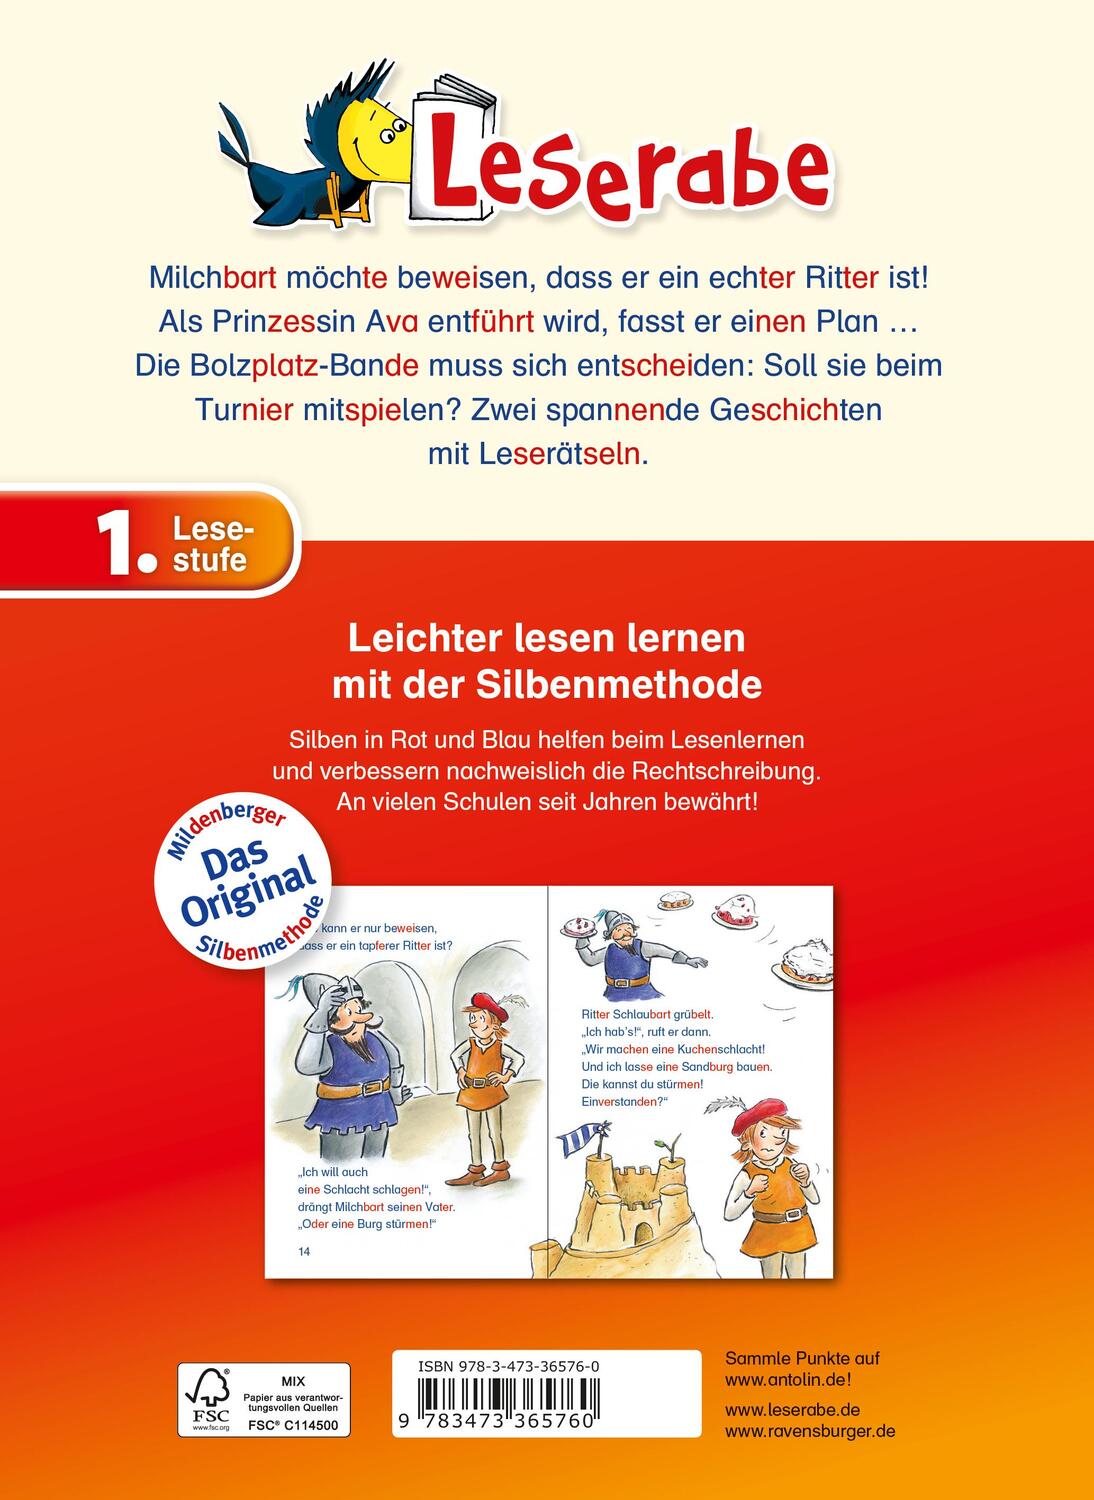 Rückseite: 9783473365760 | Rabenstarke Silbengeschichten für Jungs - Leserabe 1. Klasse -...